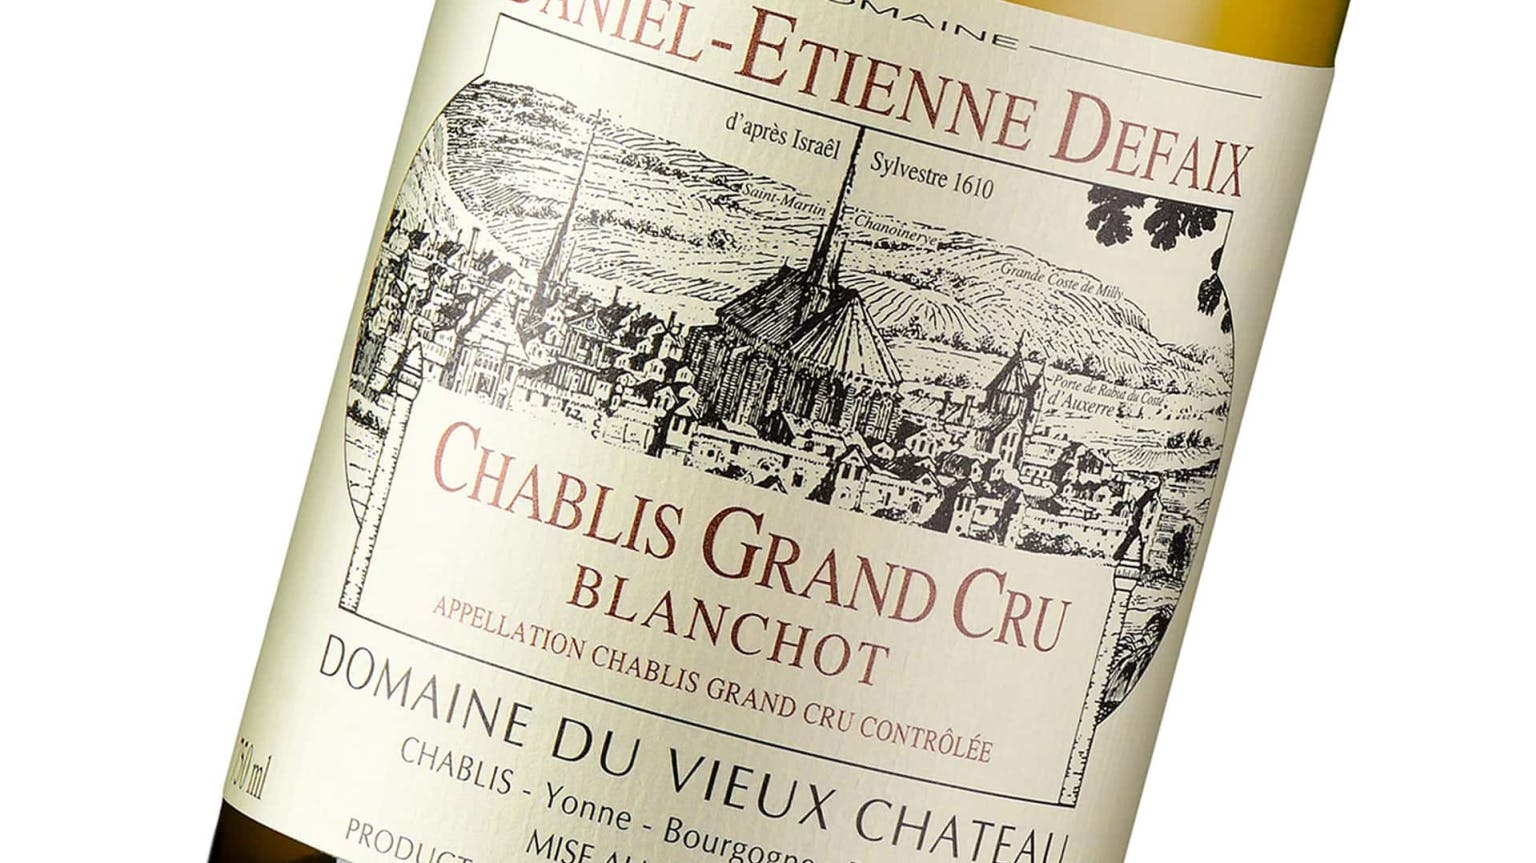 Daniel-Étienne Defaix: Chablis built to age